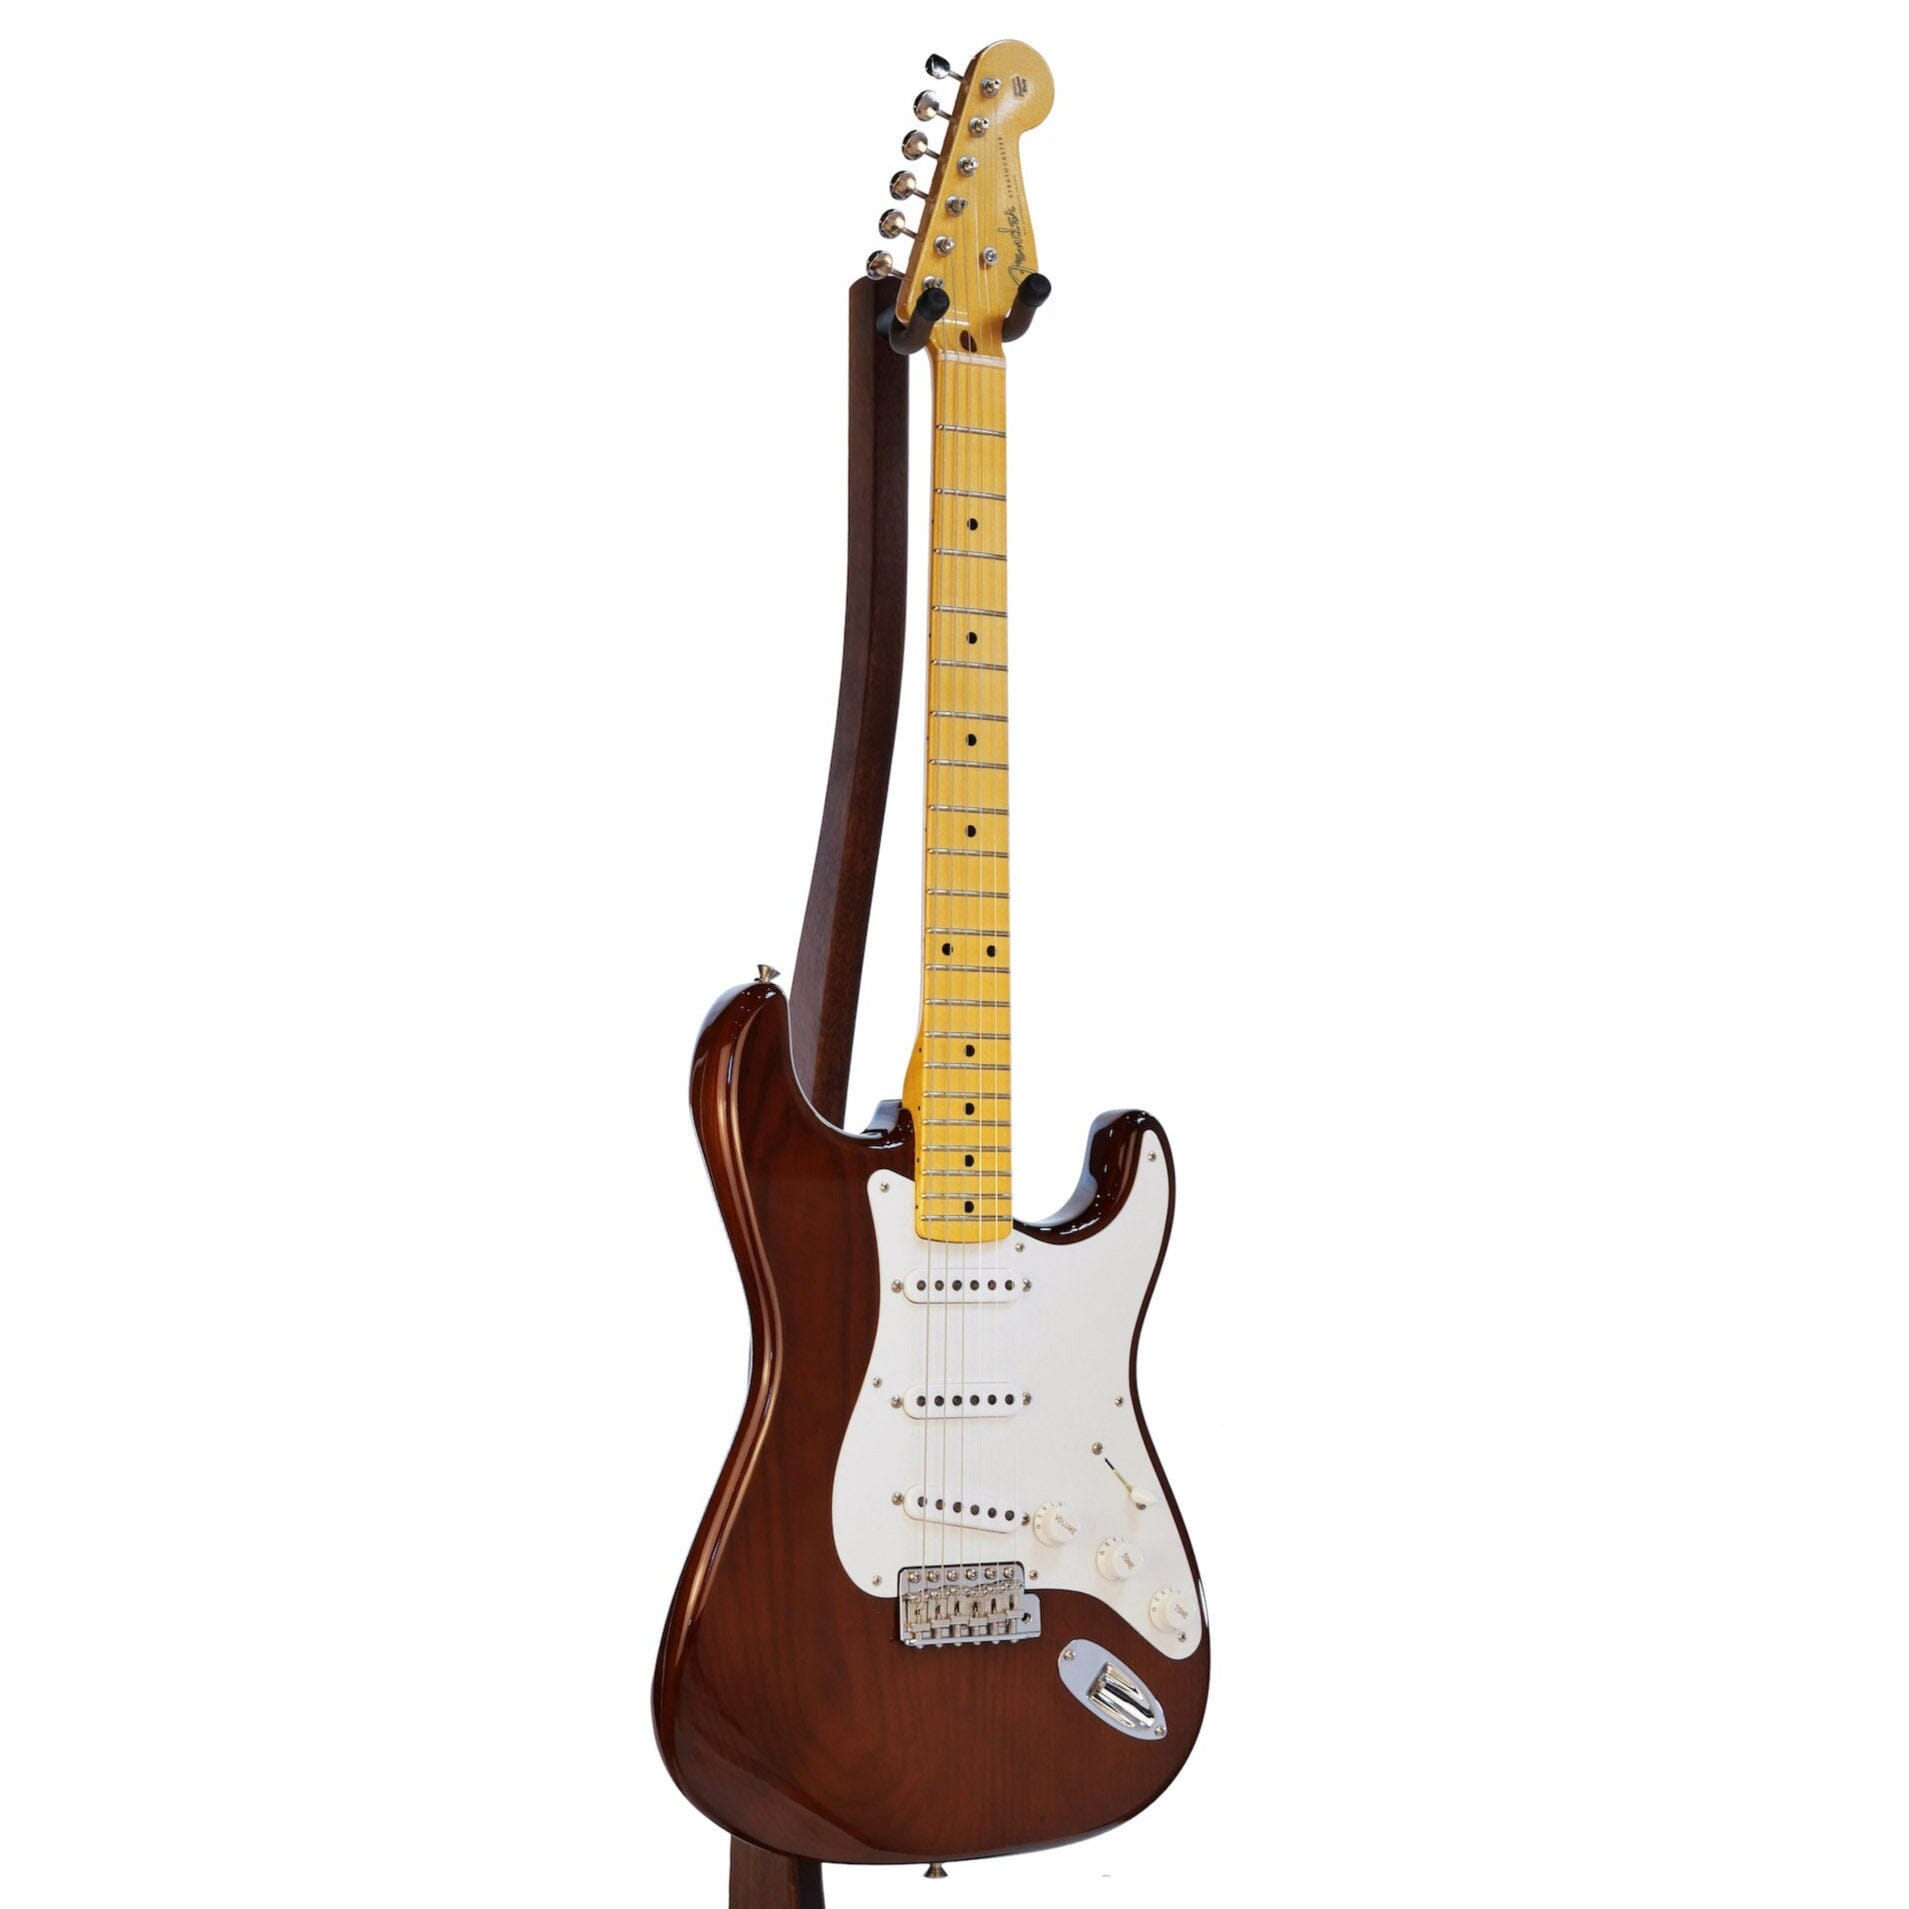 Fender Custom Shop Custom Built 1955 Precision Bass Closet Classic